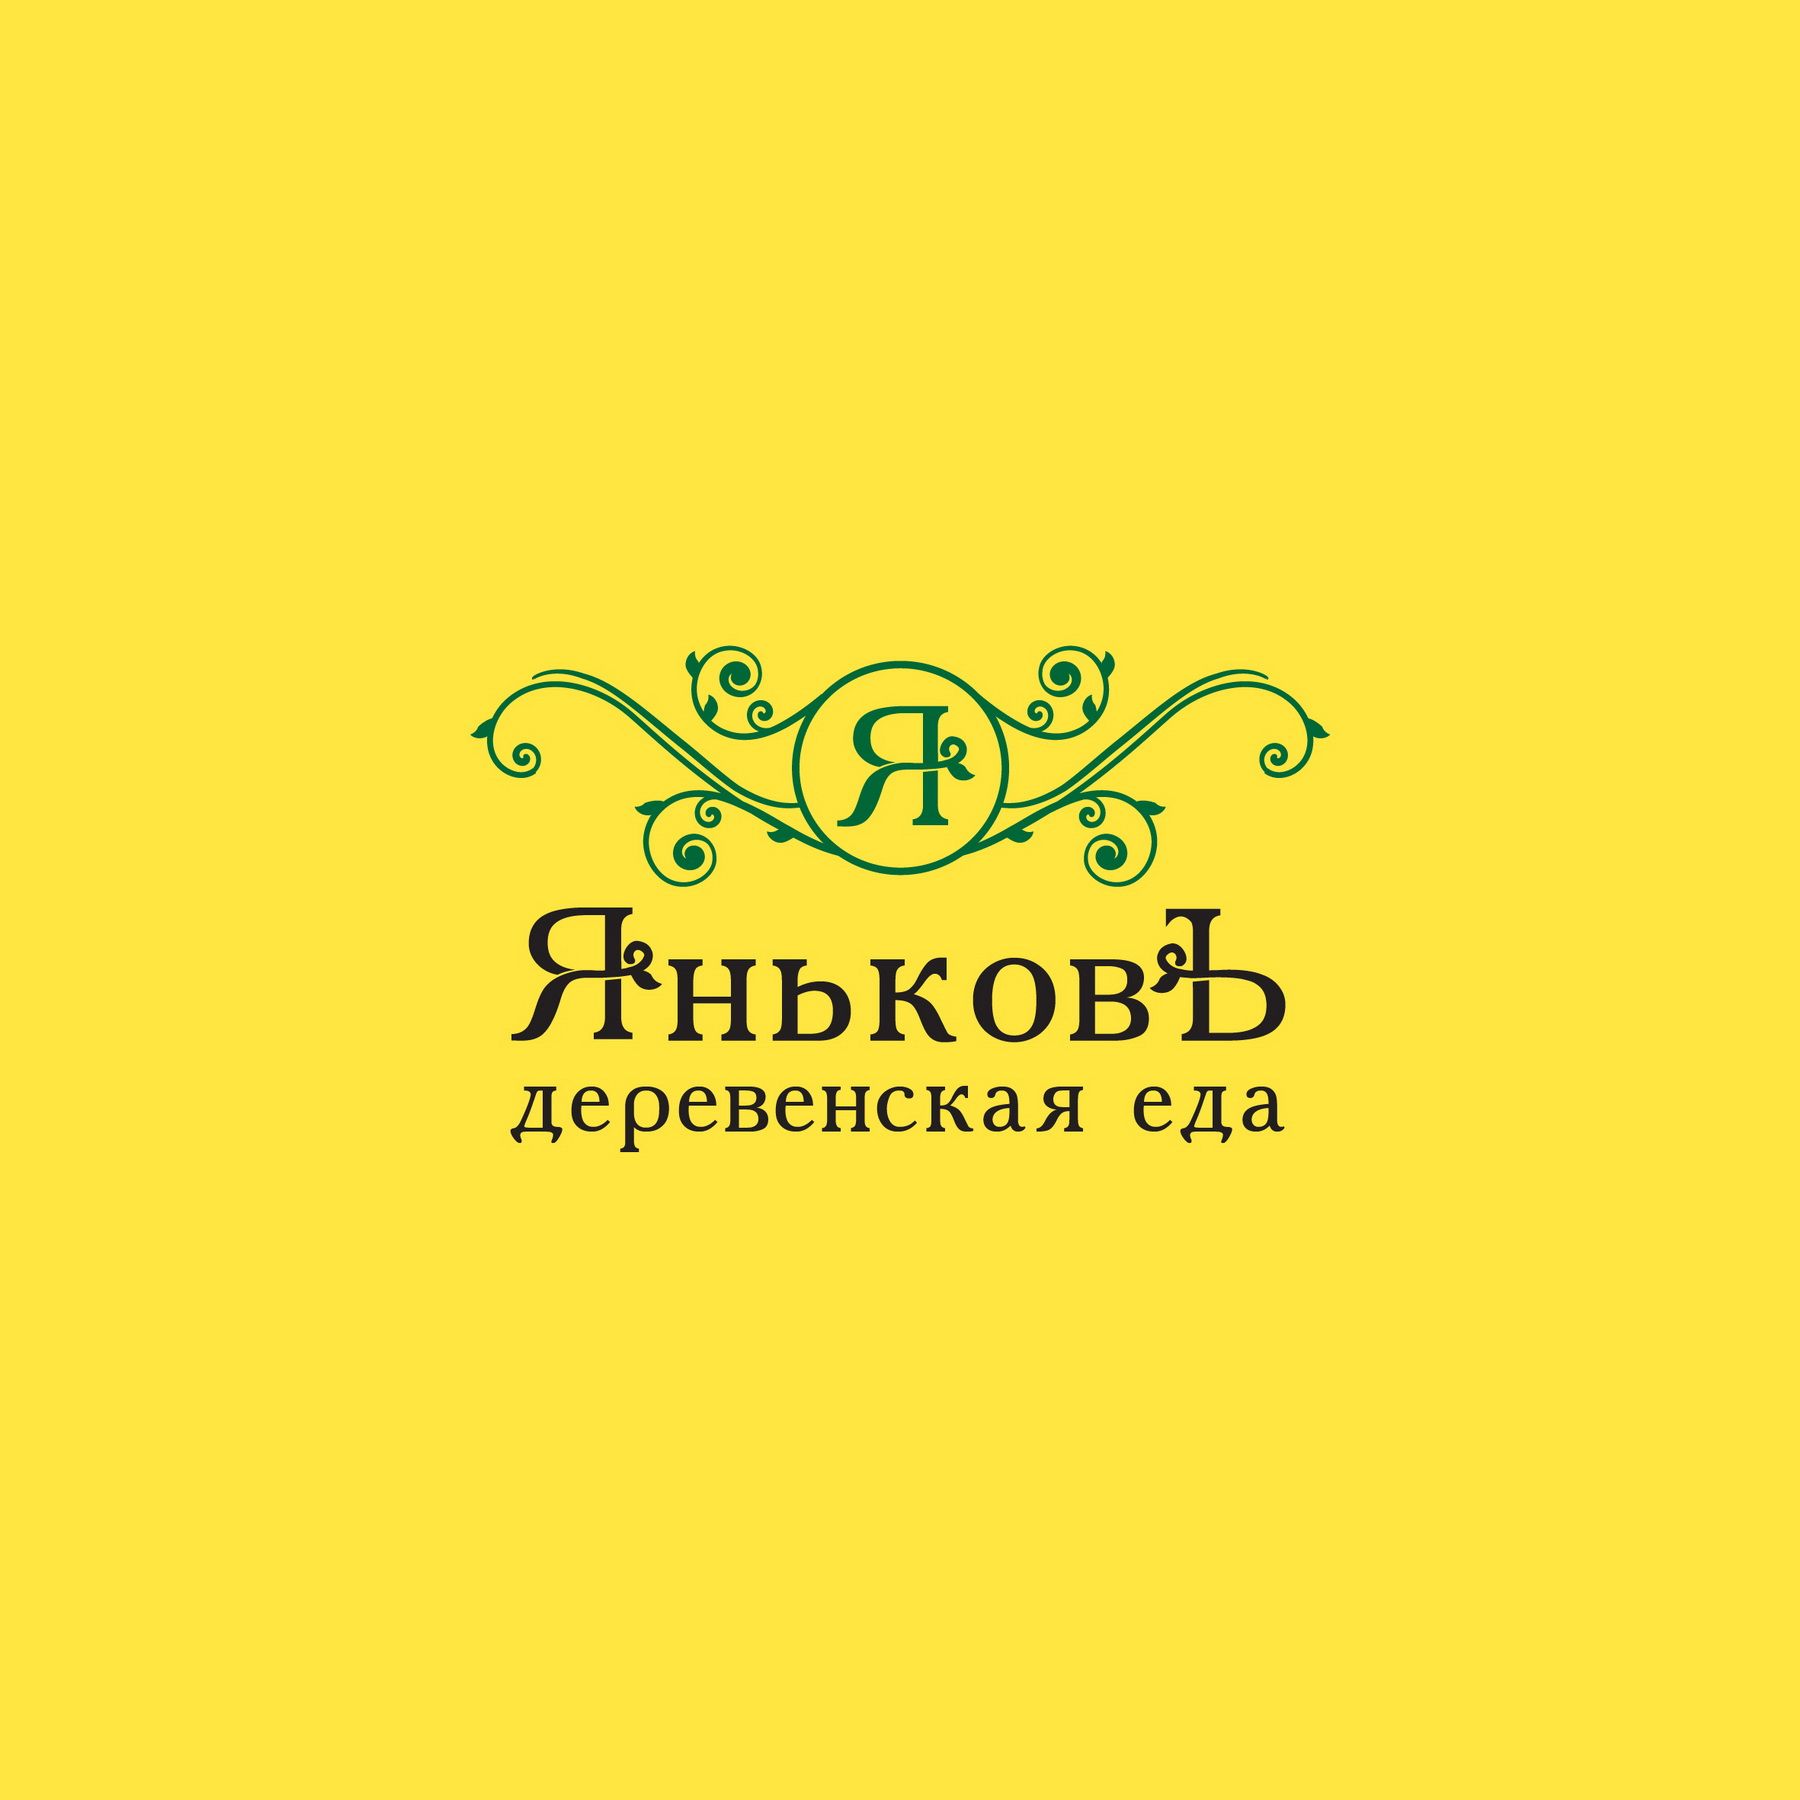 Лого и фирм.стиль для Деревенская еда - ЯньковЪ - дизайнер Korish